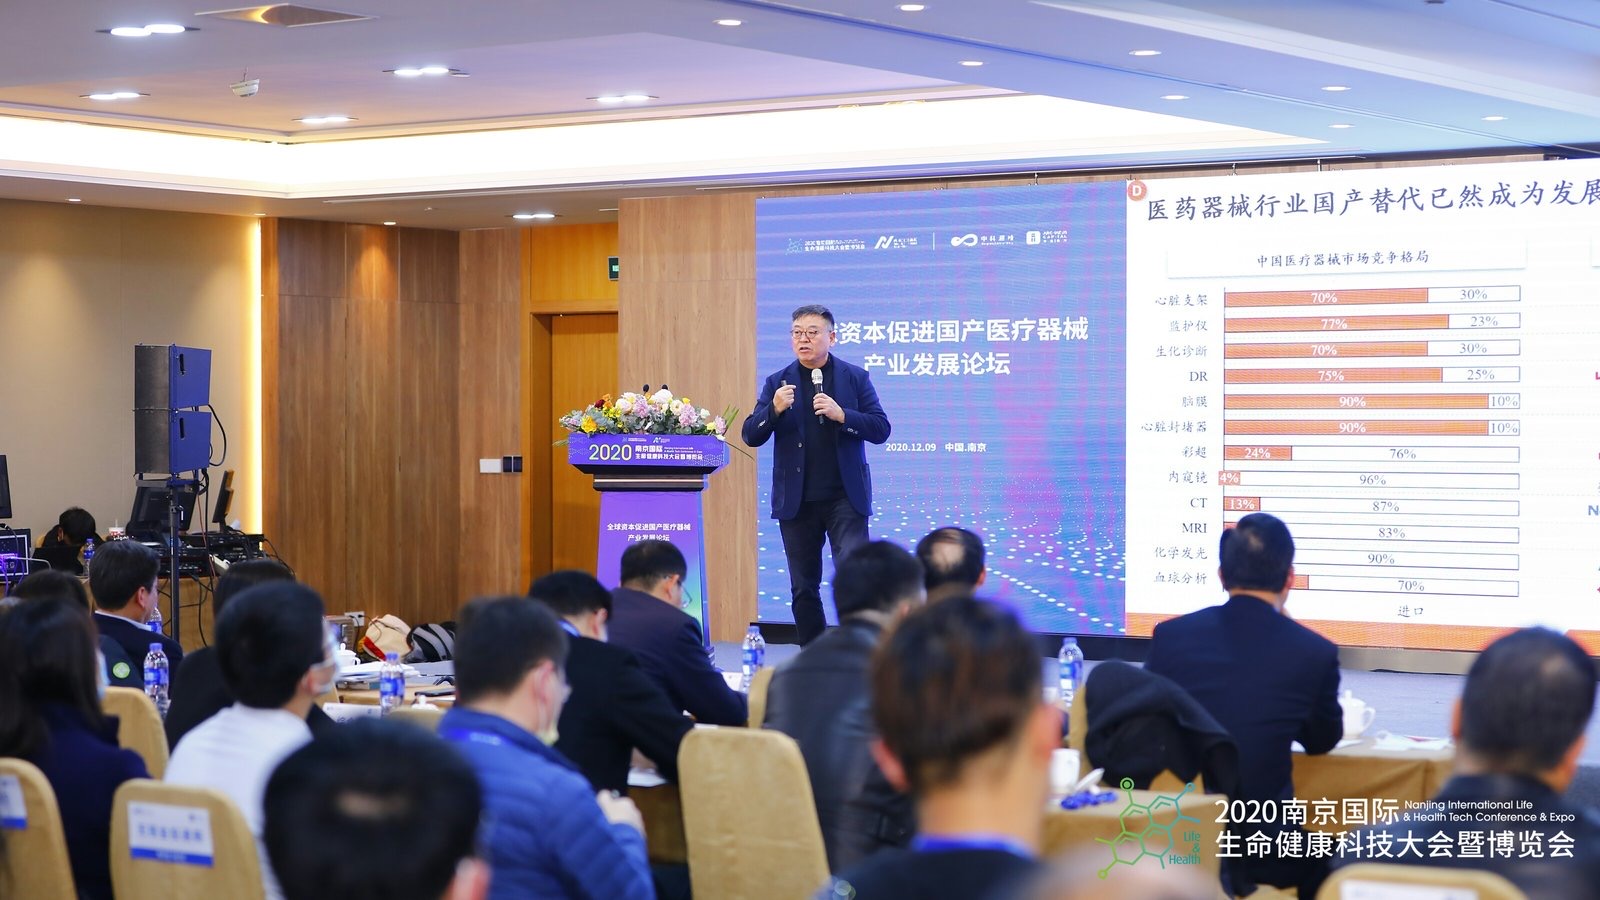 赛富亚洲投资基金创始管理合伙人阎焱在发表演讲   南京江北新区供图